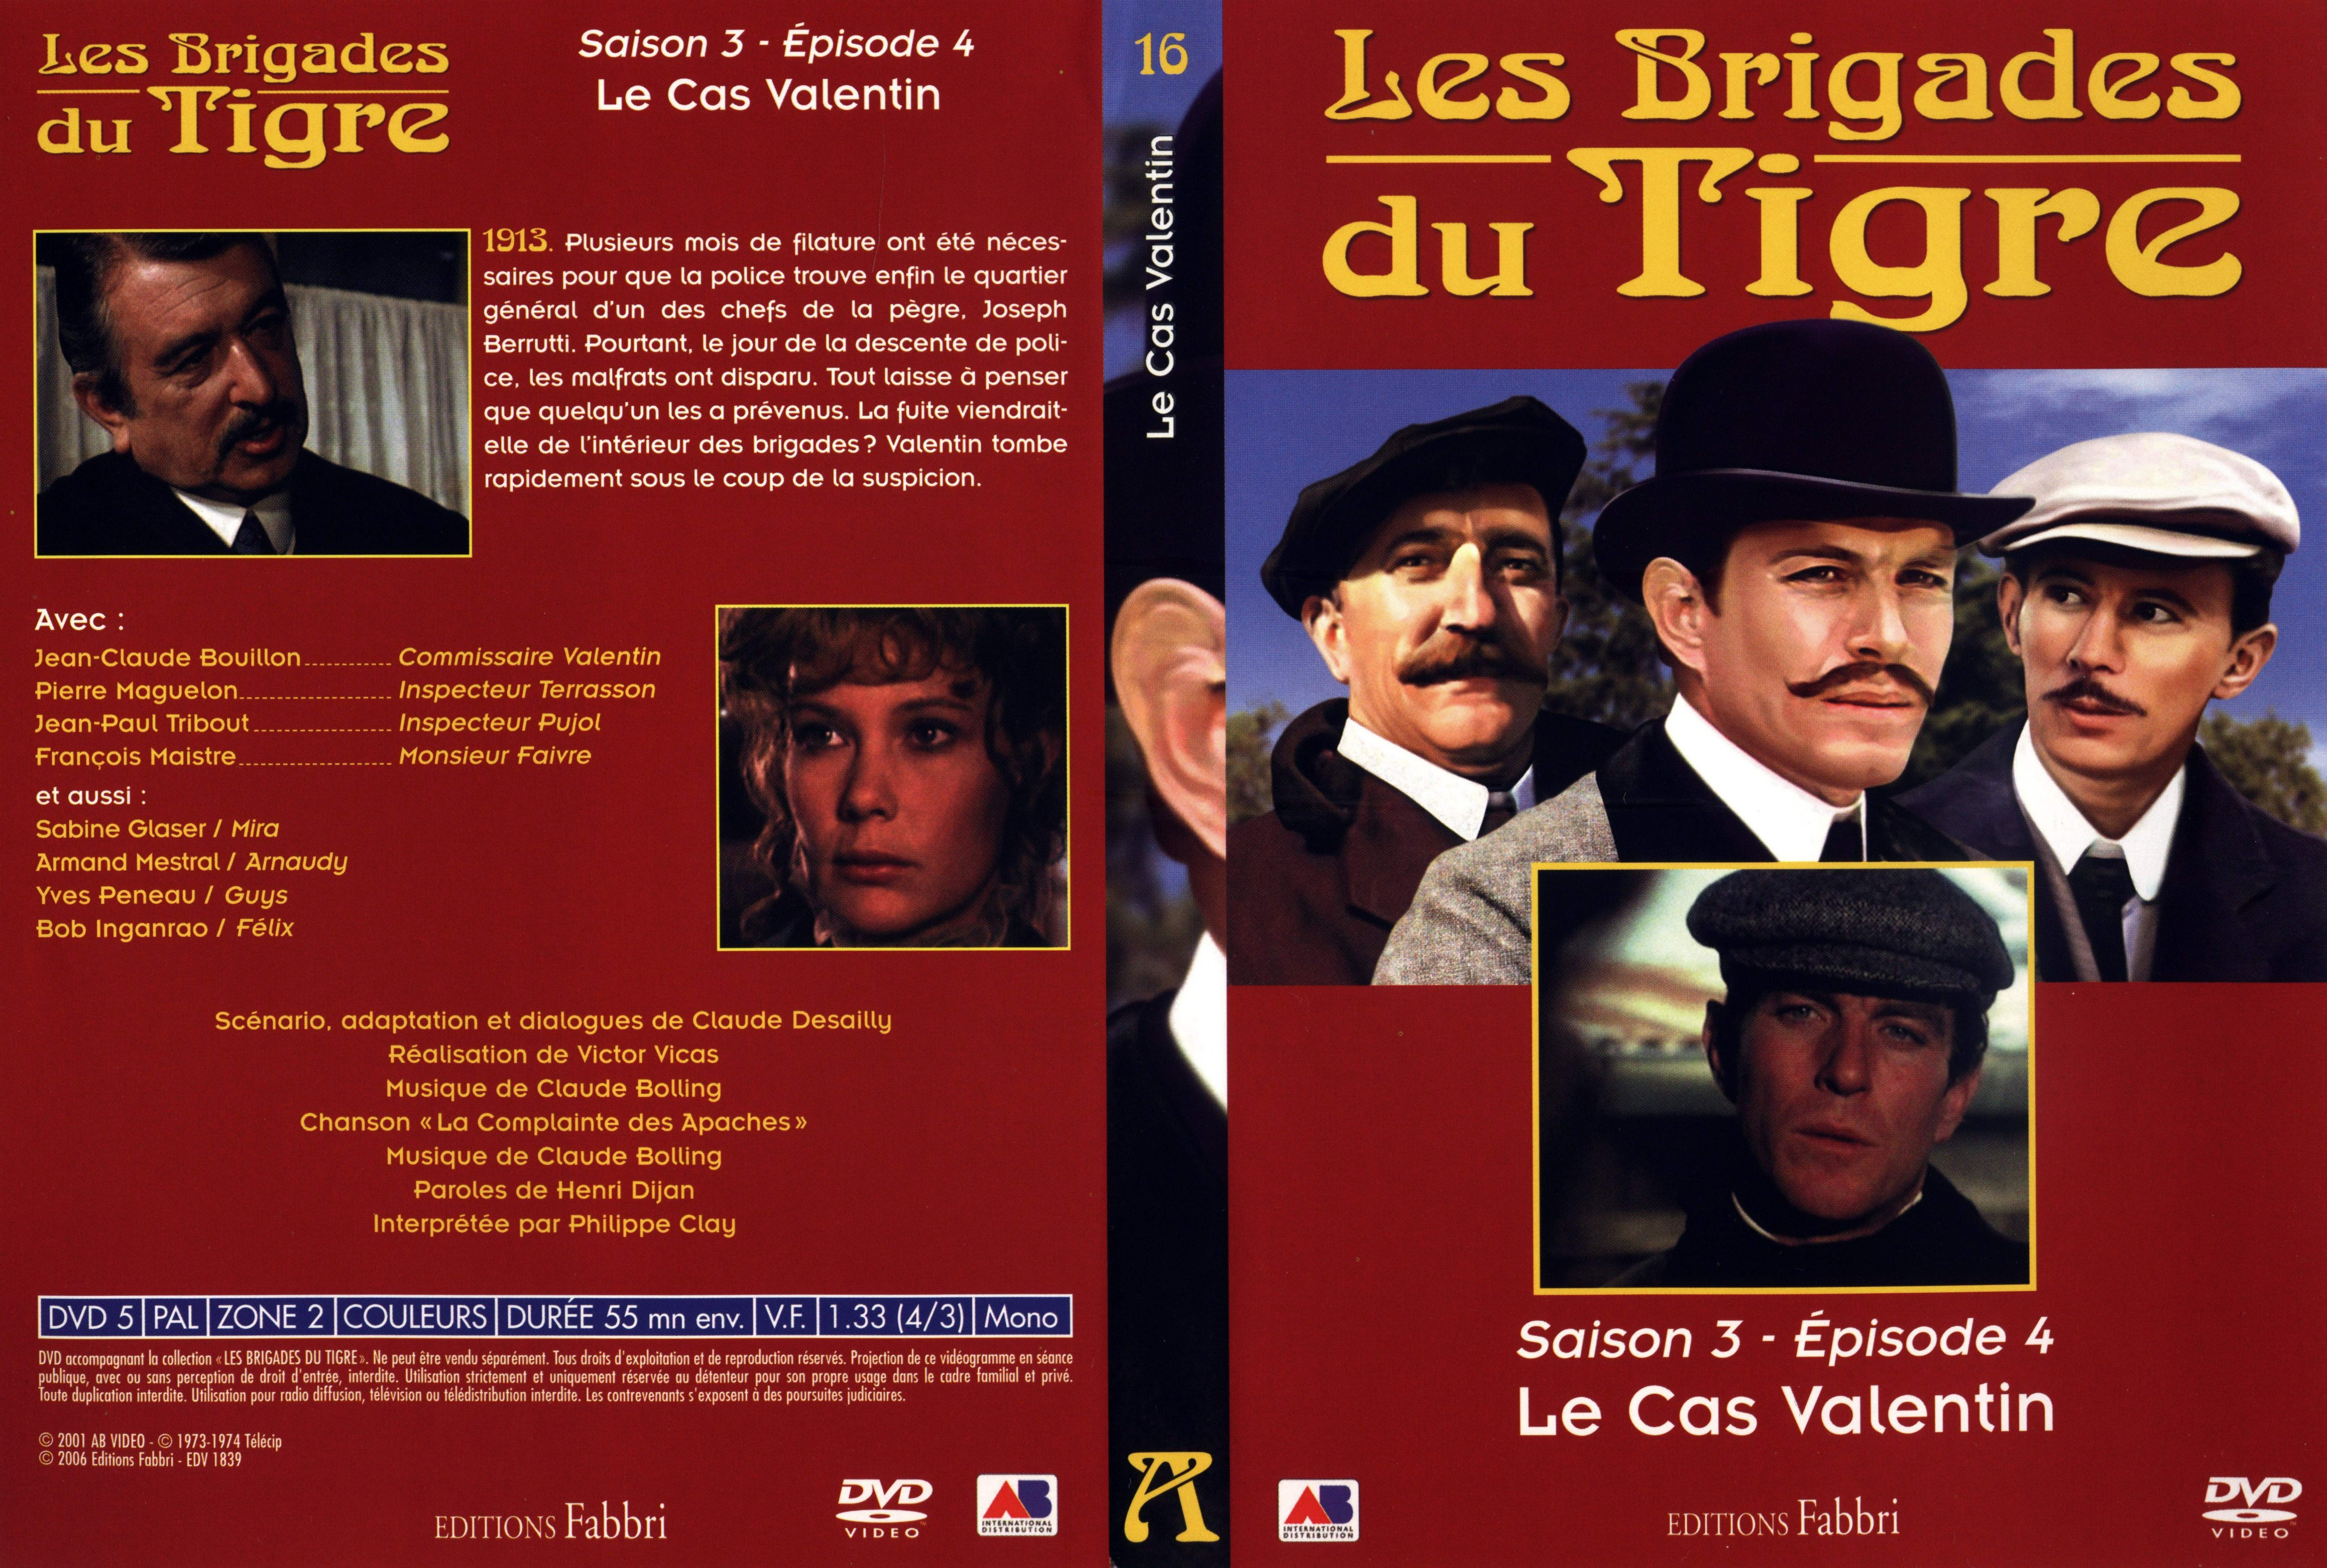 Jaquette DVD Les brigades du tigre saison 3 pisode 4